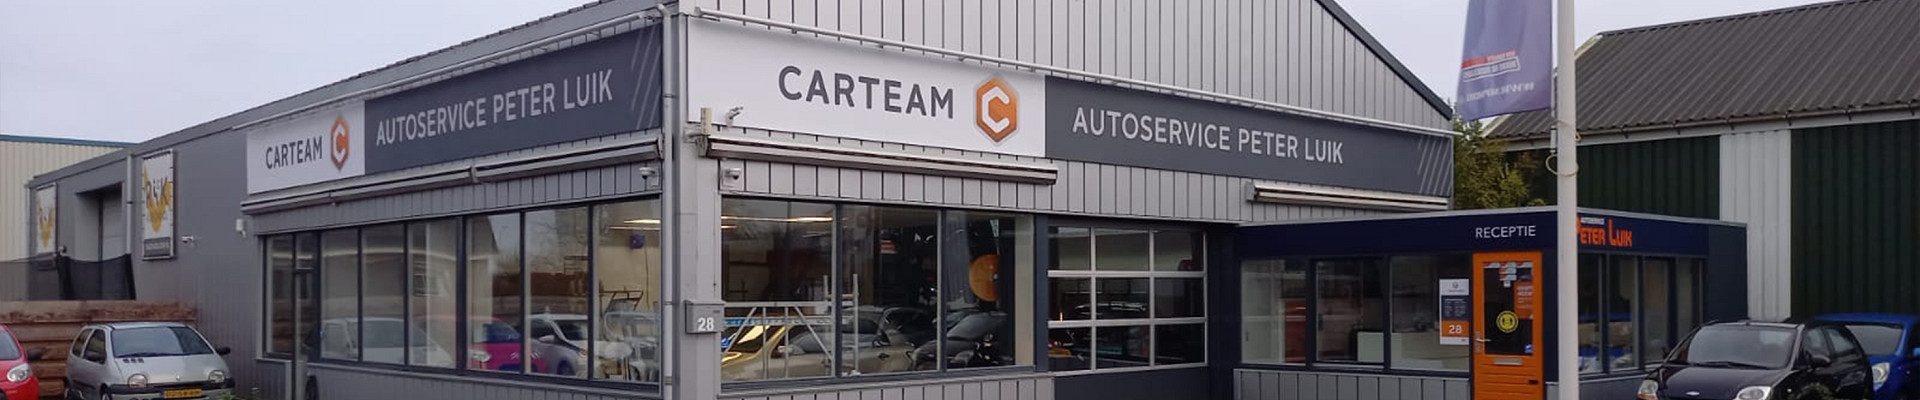 Carteam Autoservice Peter Luik